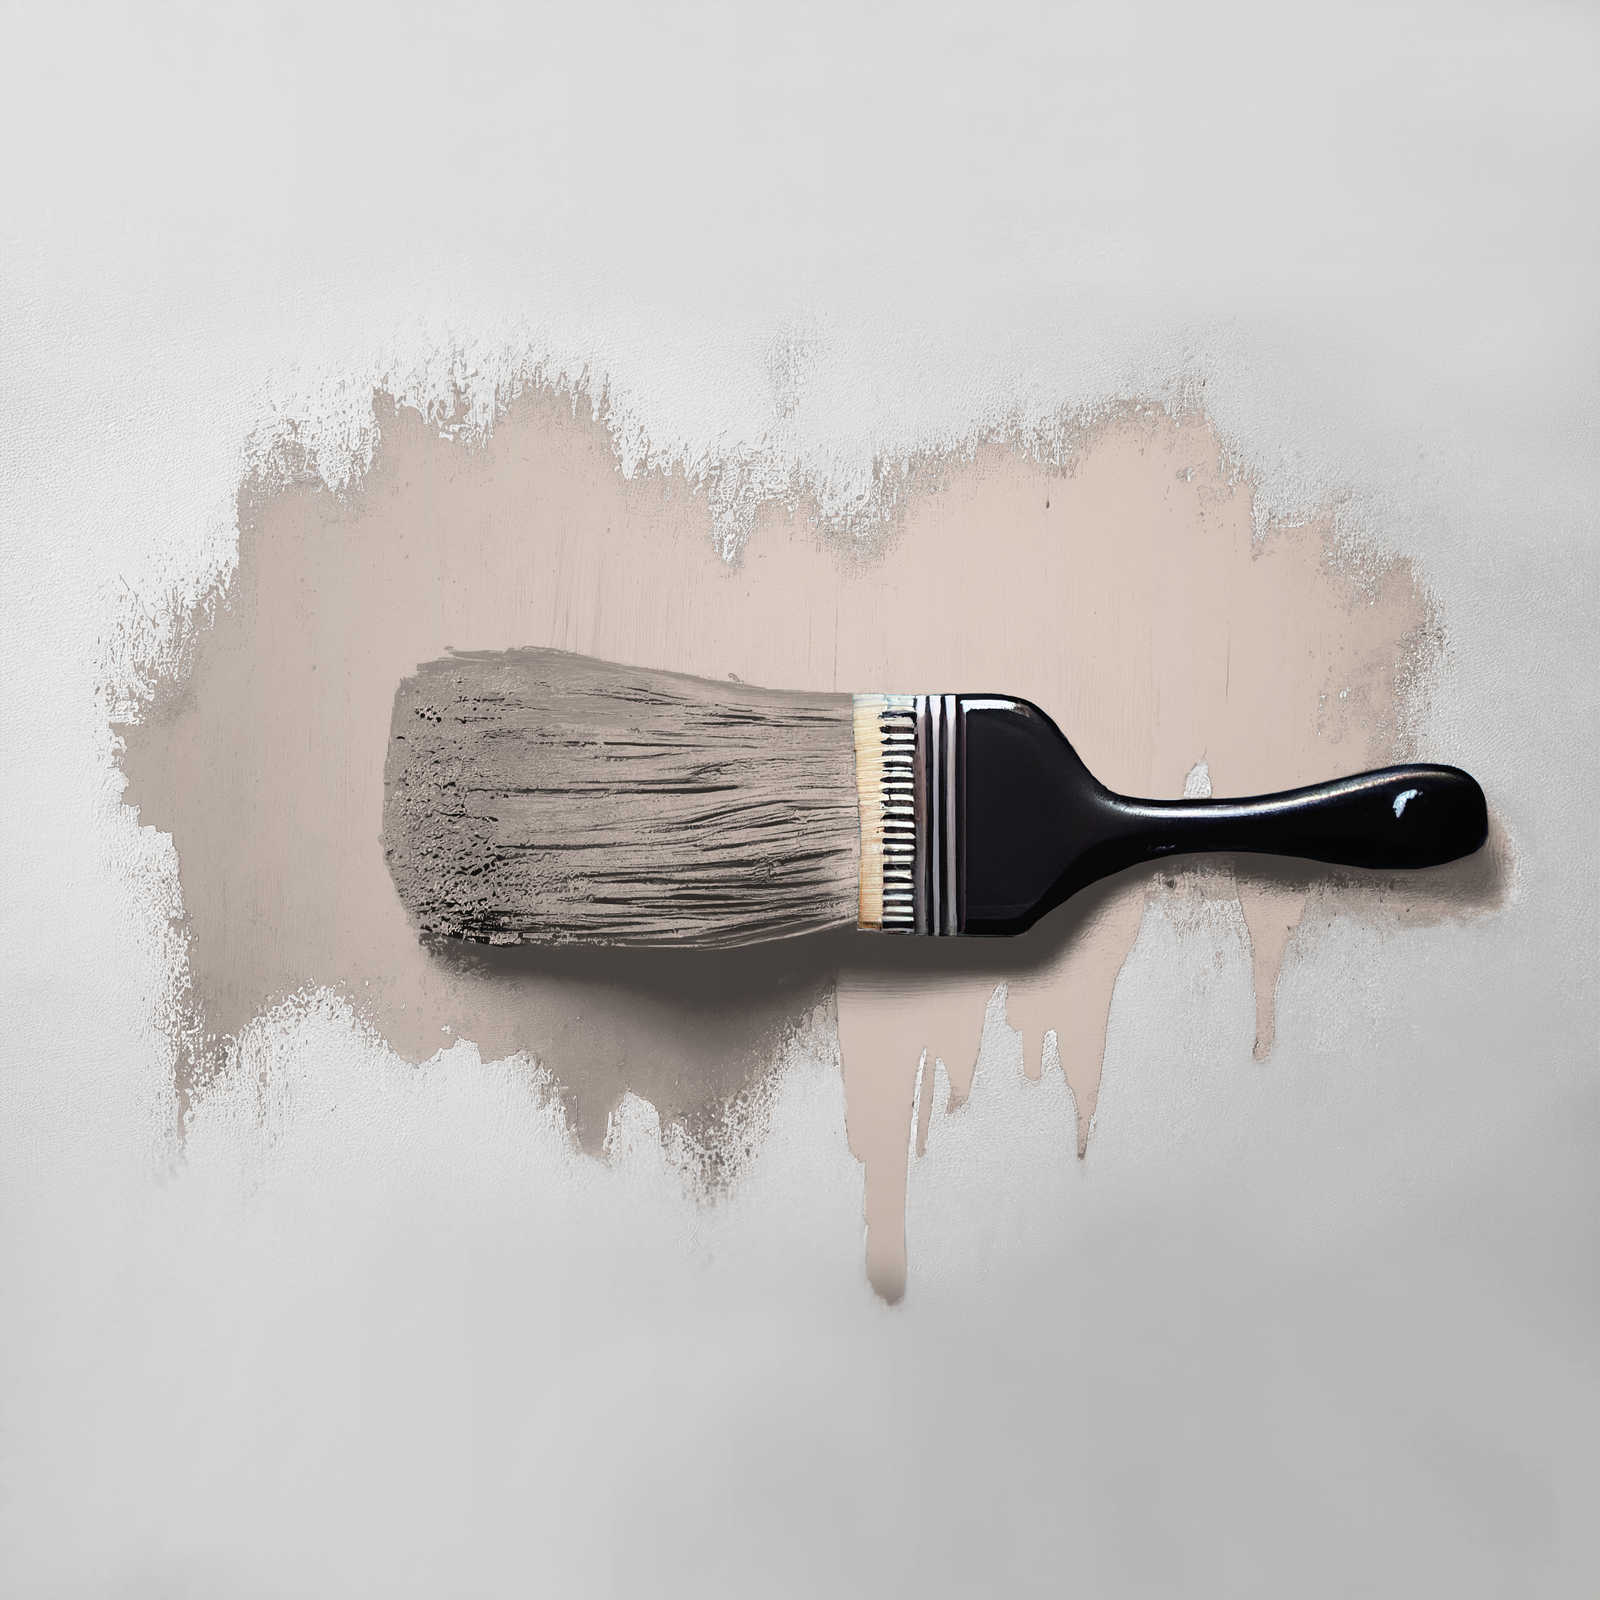             Pittura murale TCK6017 »Chilled Chai Latte« in grigio morbido – 5,0 litri
        